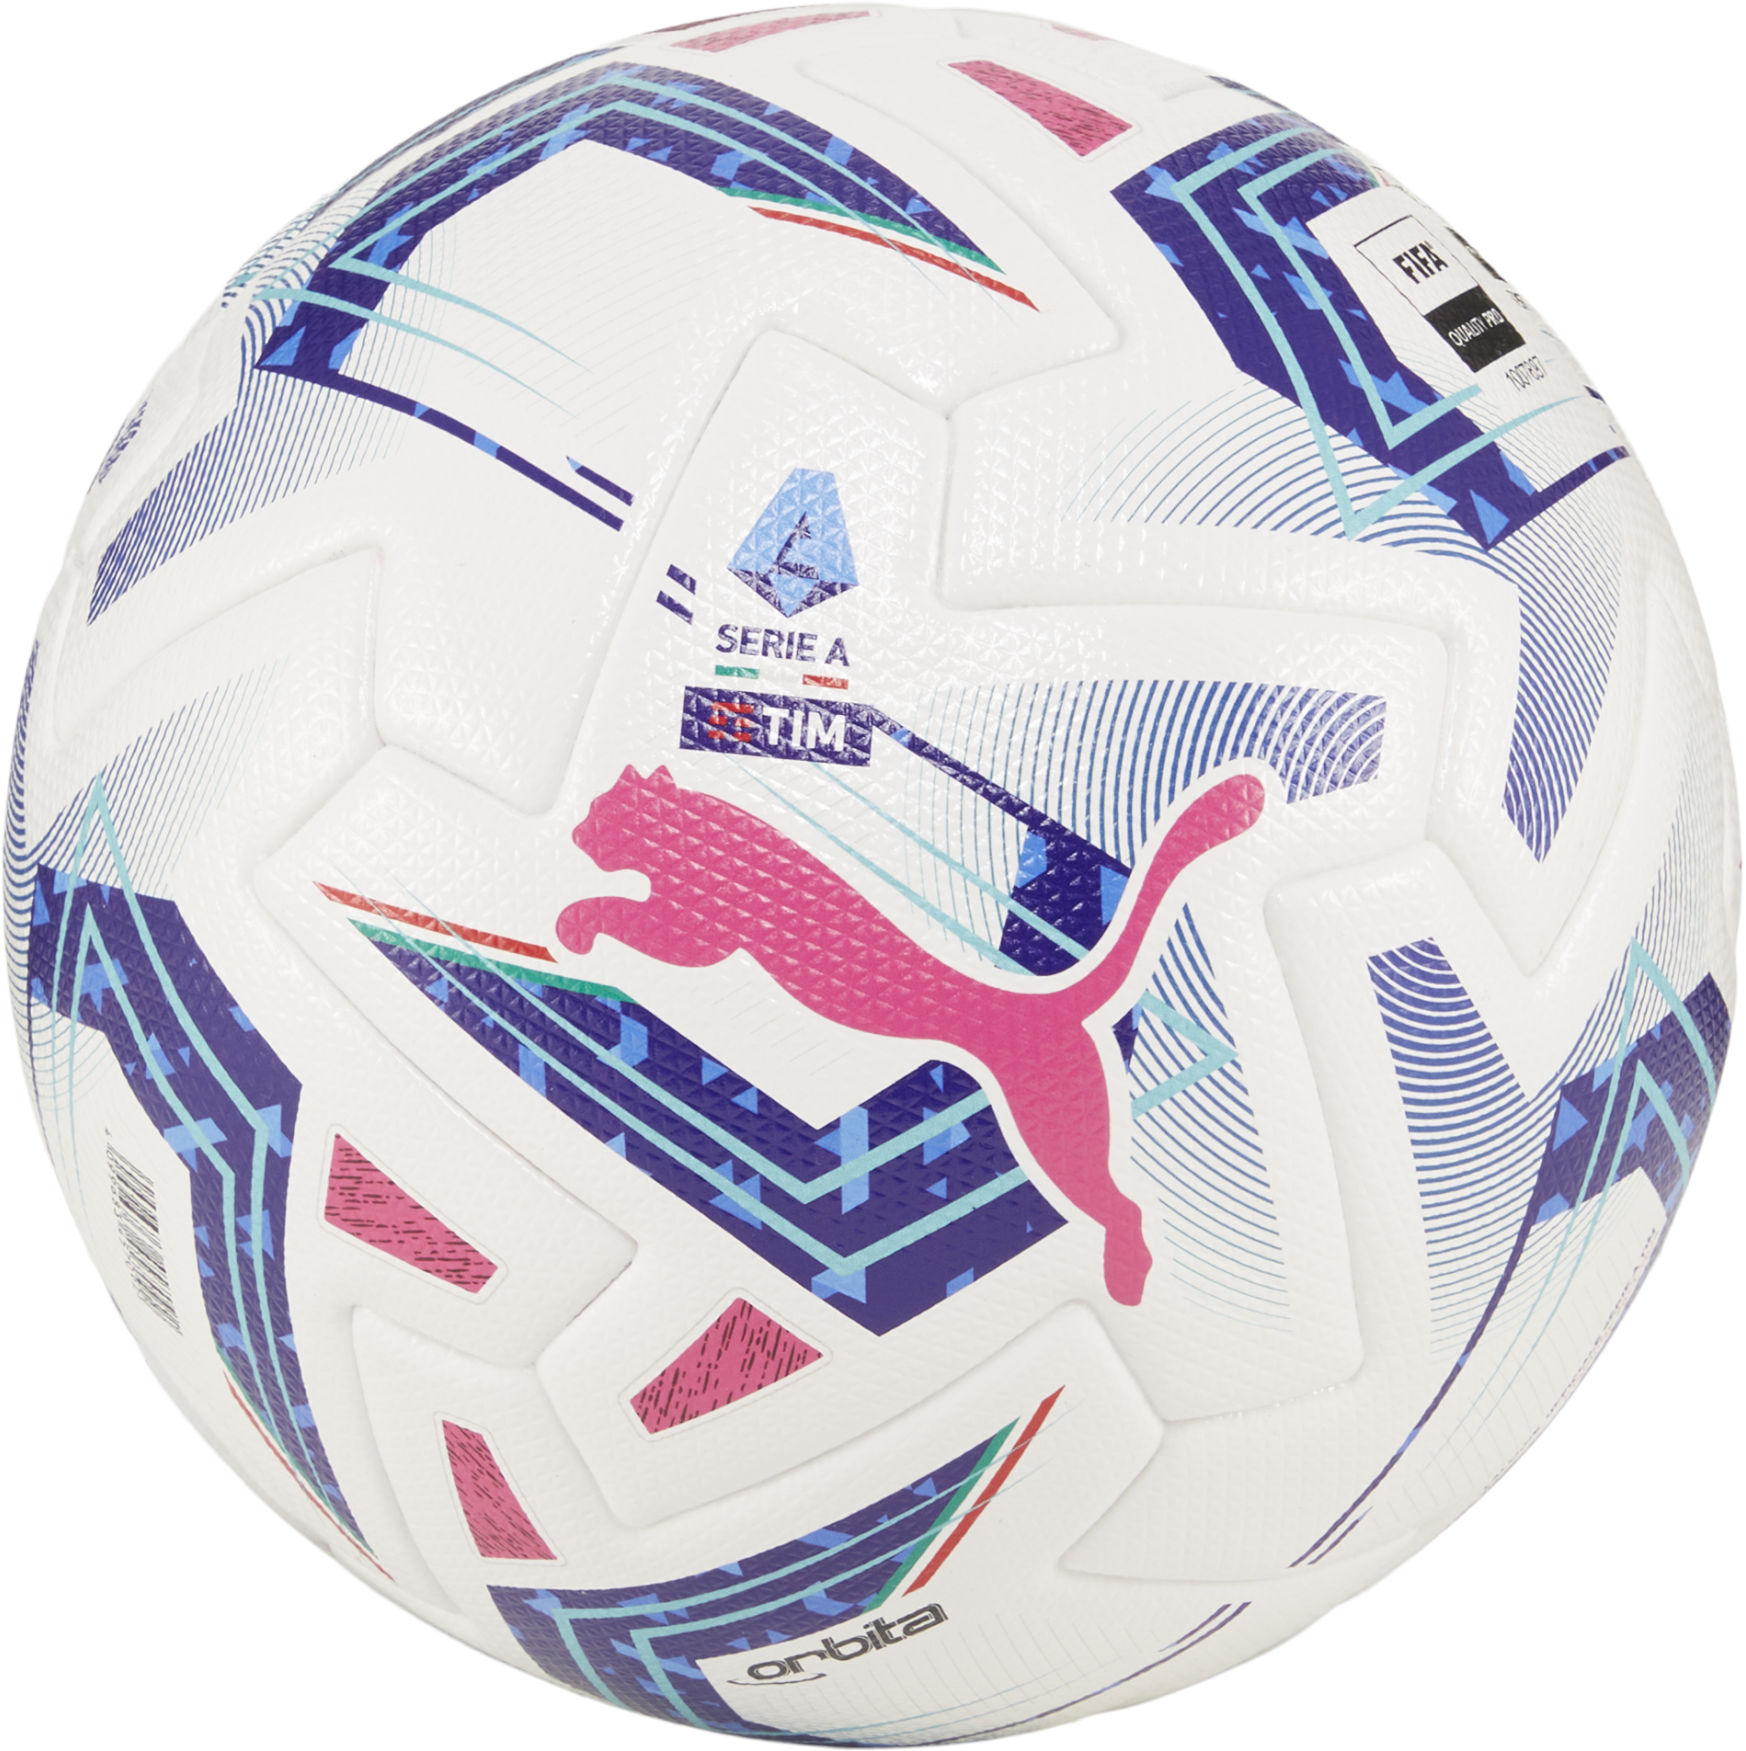 Fotbalový míč Puma Orbita Serie A (FIFA Quality Pro) WP White-Blue Siz